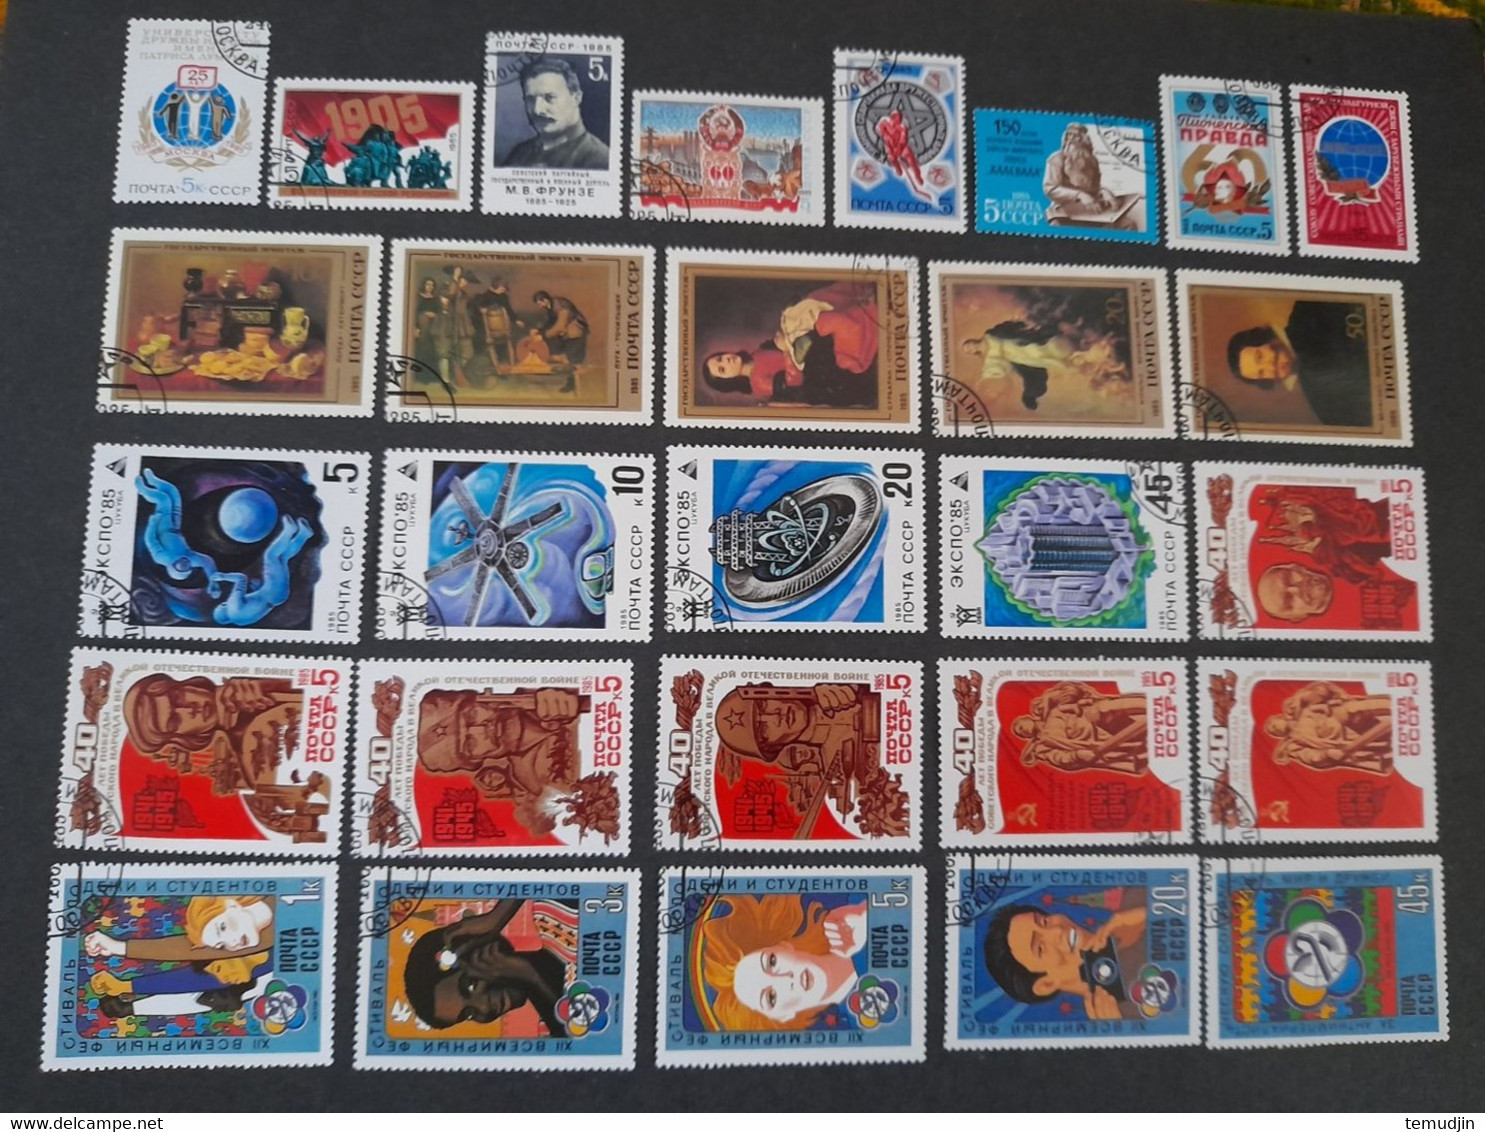 U.R.S.S.  1984 et 1985: 2 années complètes Yv. timbres oblitérés° avec blocs